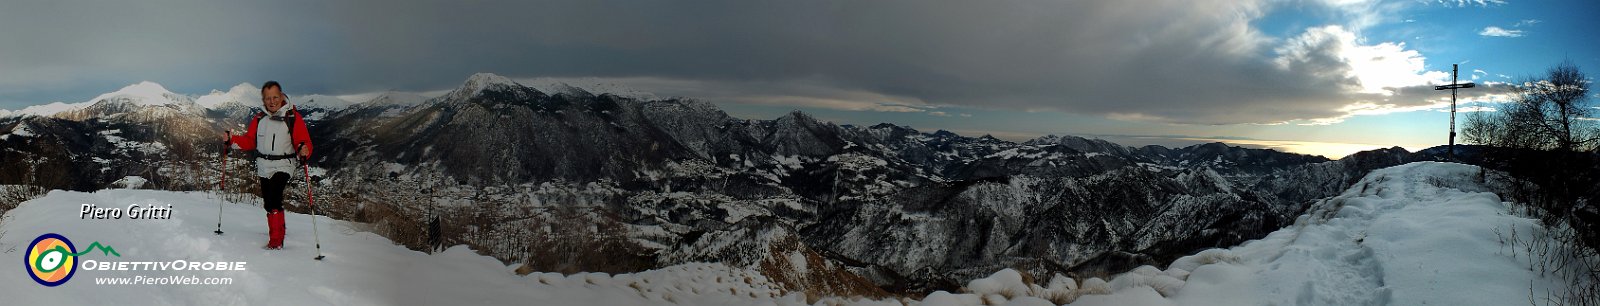 17 Panoramica in vetta al Monte Gioco verso la Val Serina.jpg